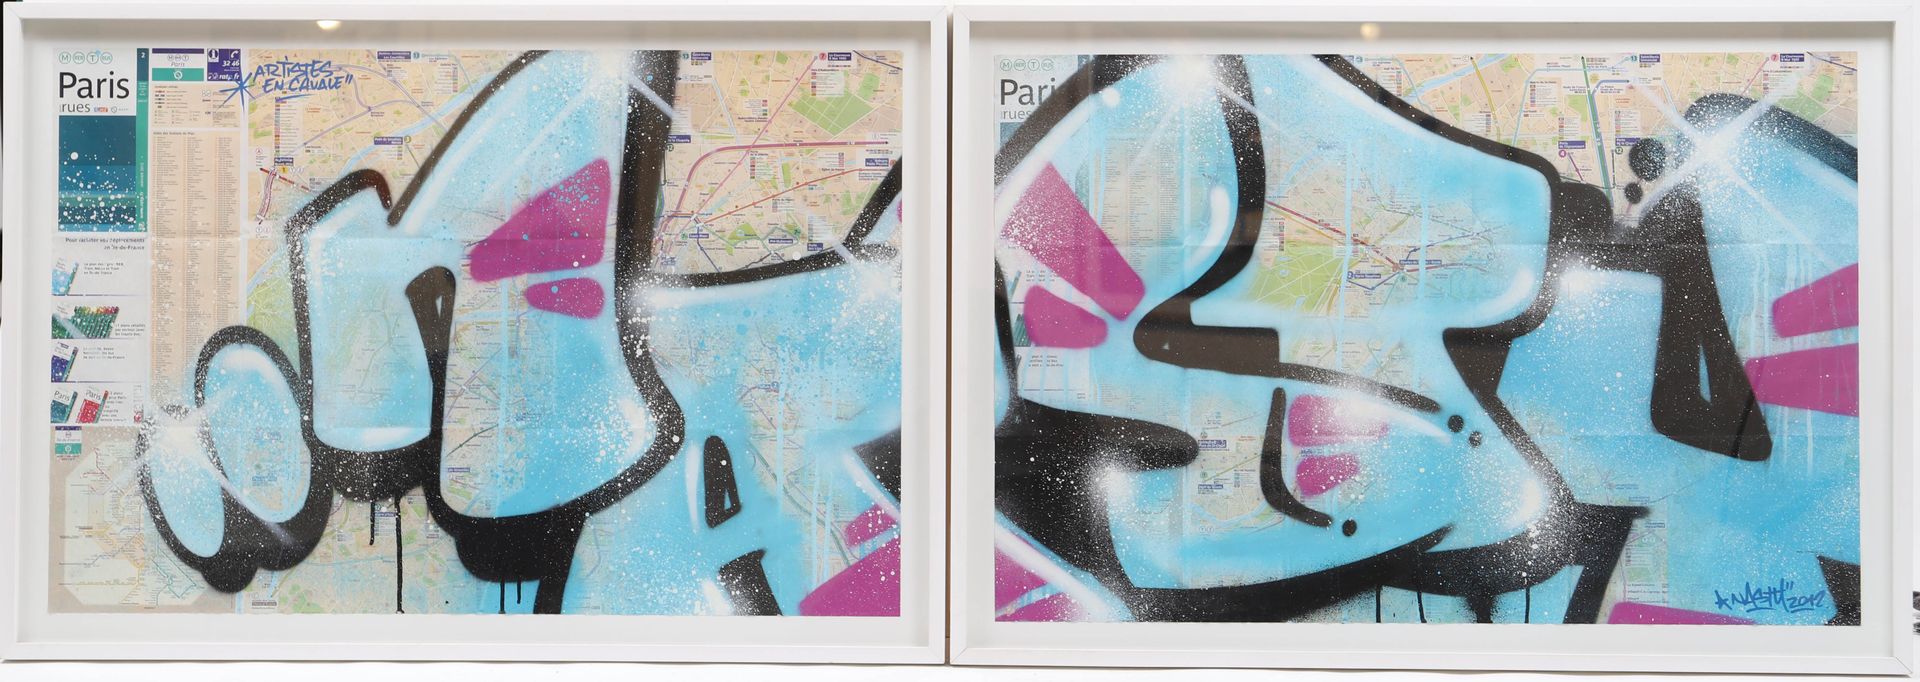 Null Nasty (nato nel 1975)

Artista di strada francese 

Basata sulle mappe dell&hellip;